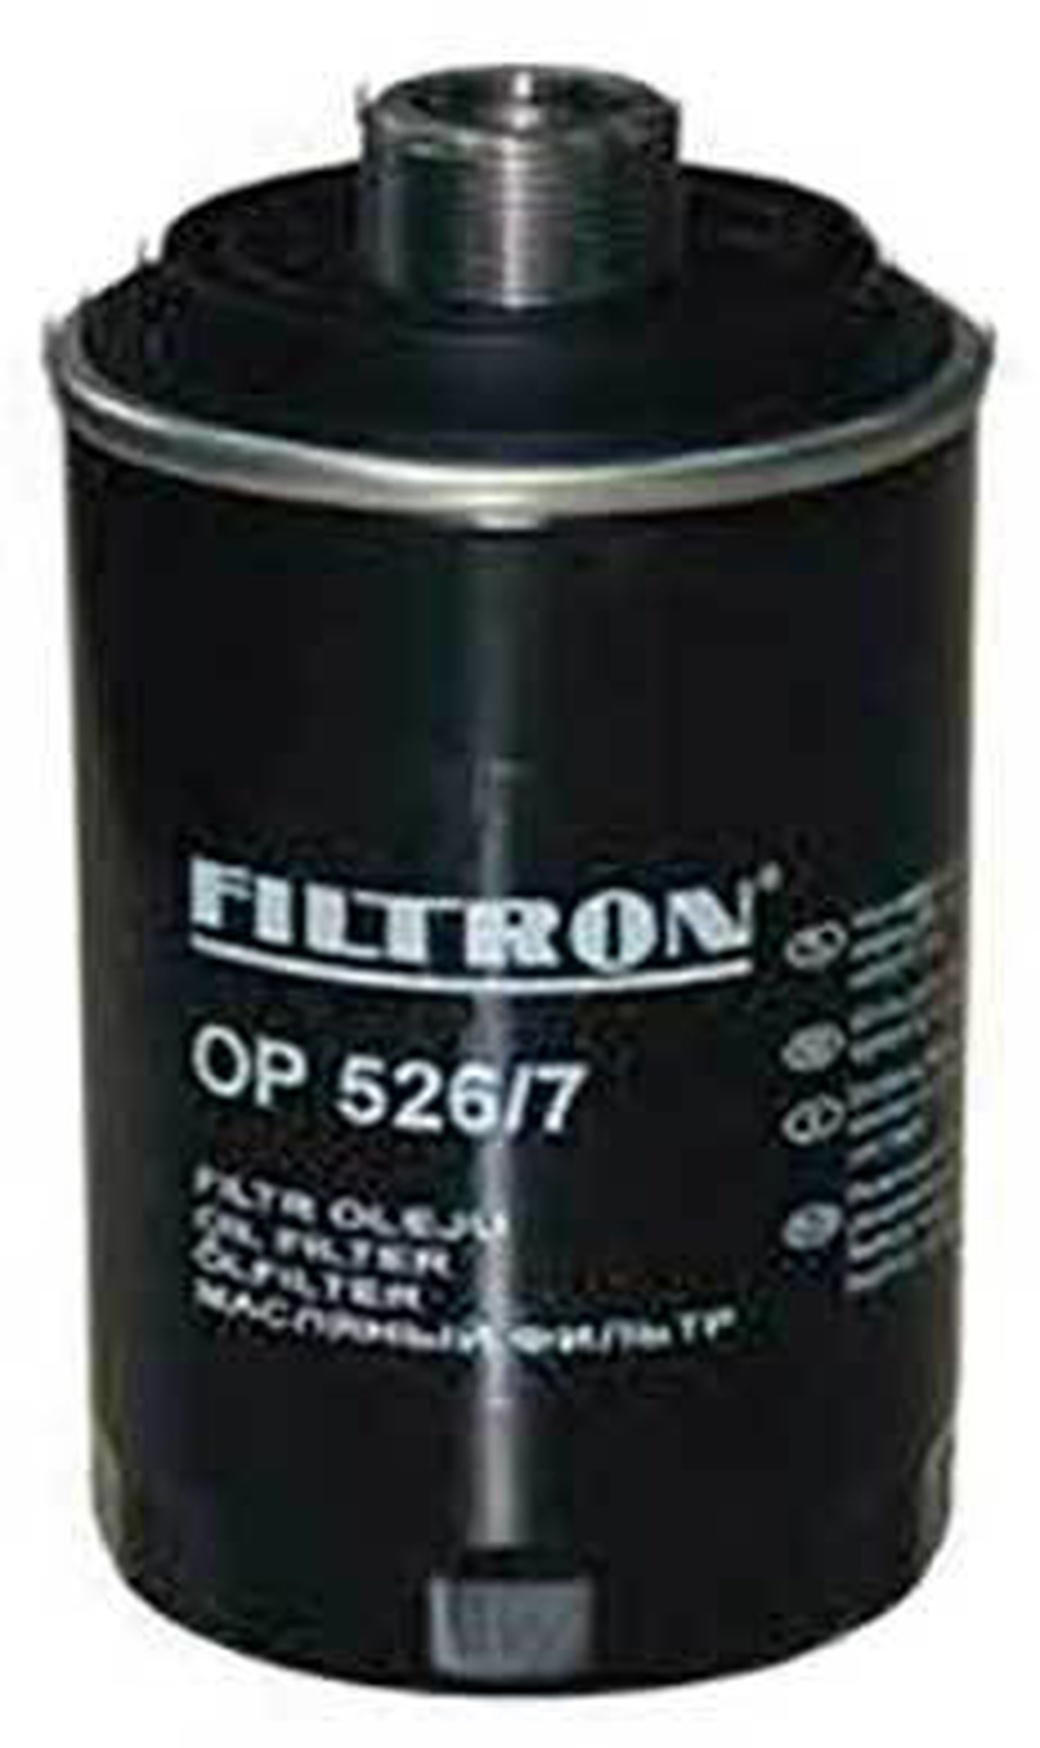 Фильтр масляный FILTRON OP526/7 для VAG+Skoda 2004-> mot.1.8TFSI/2.0TFSI фото